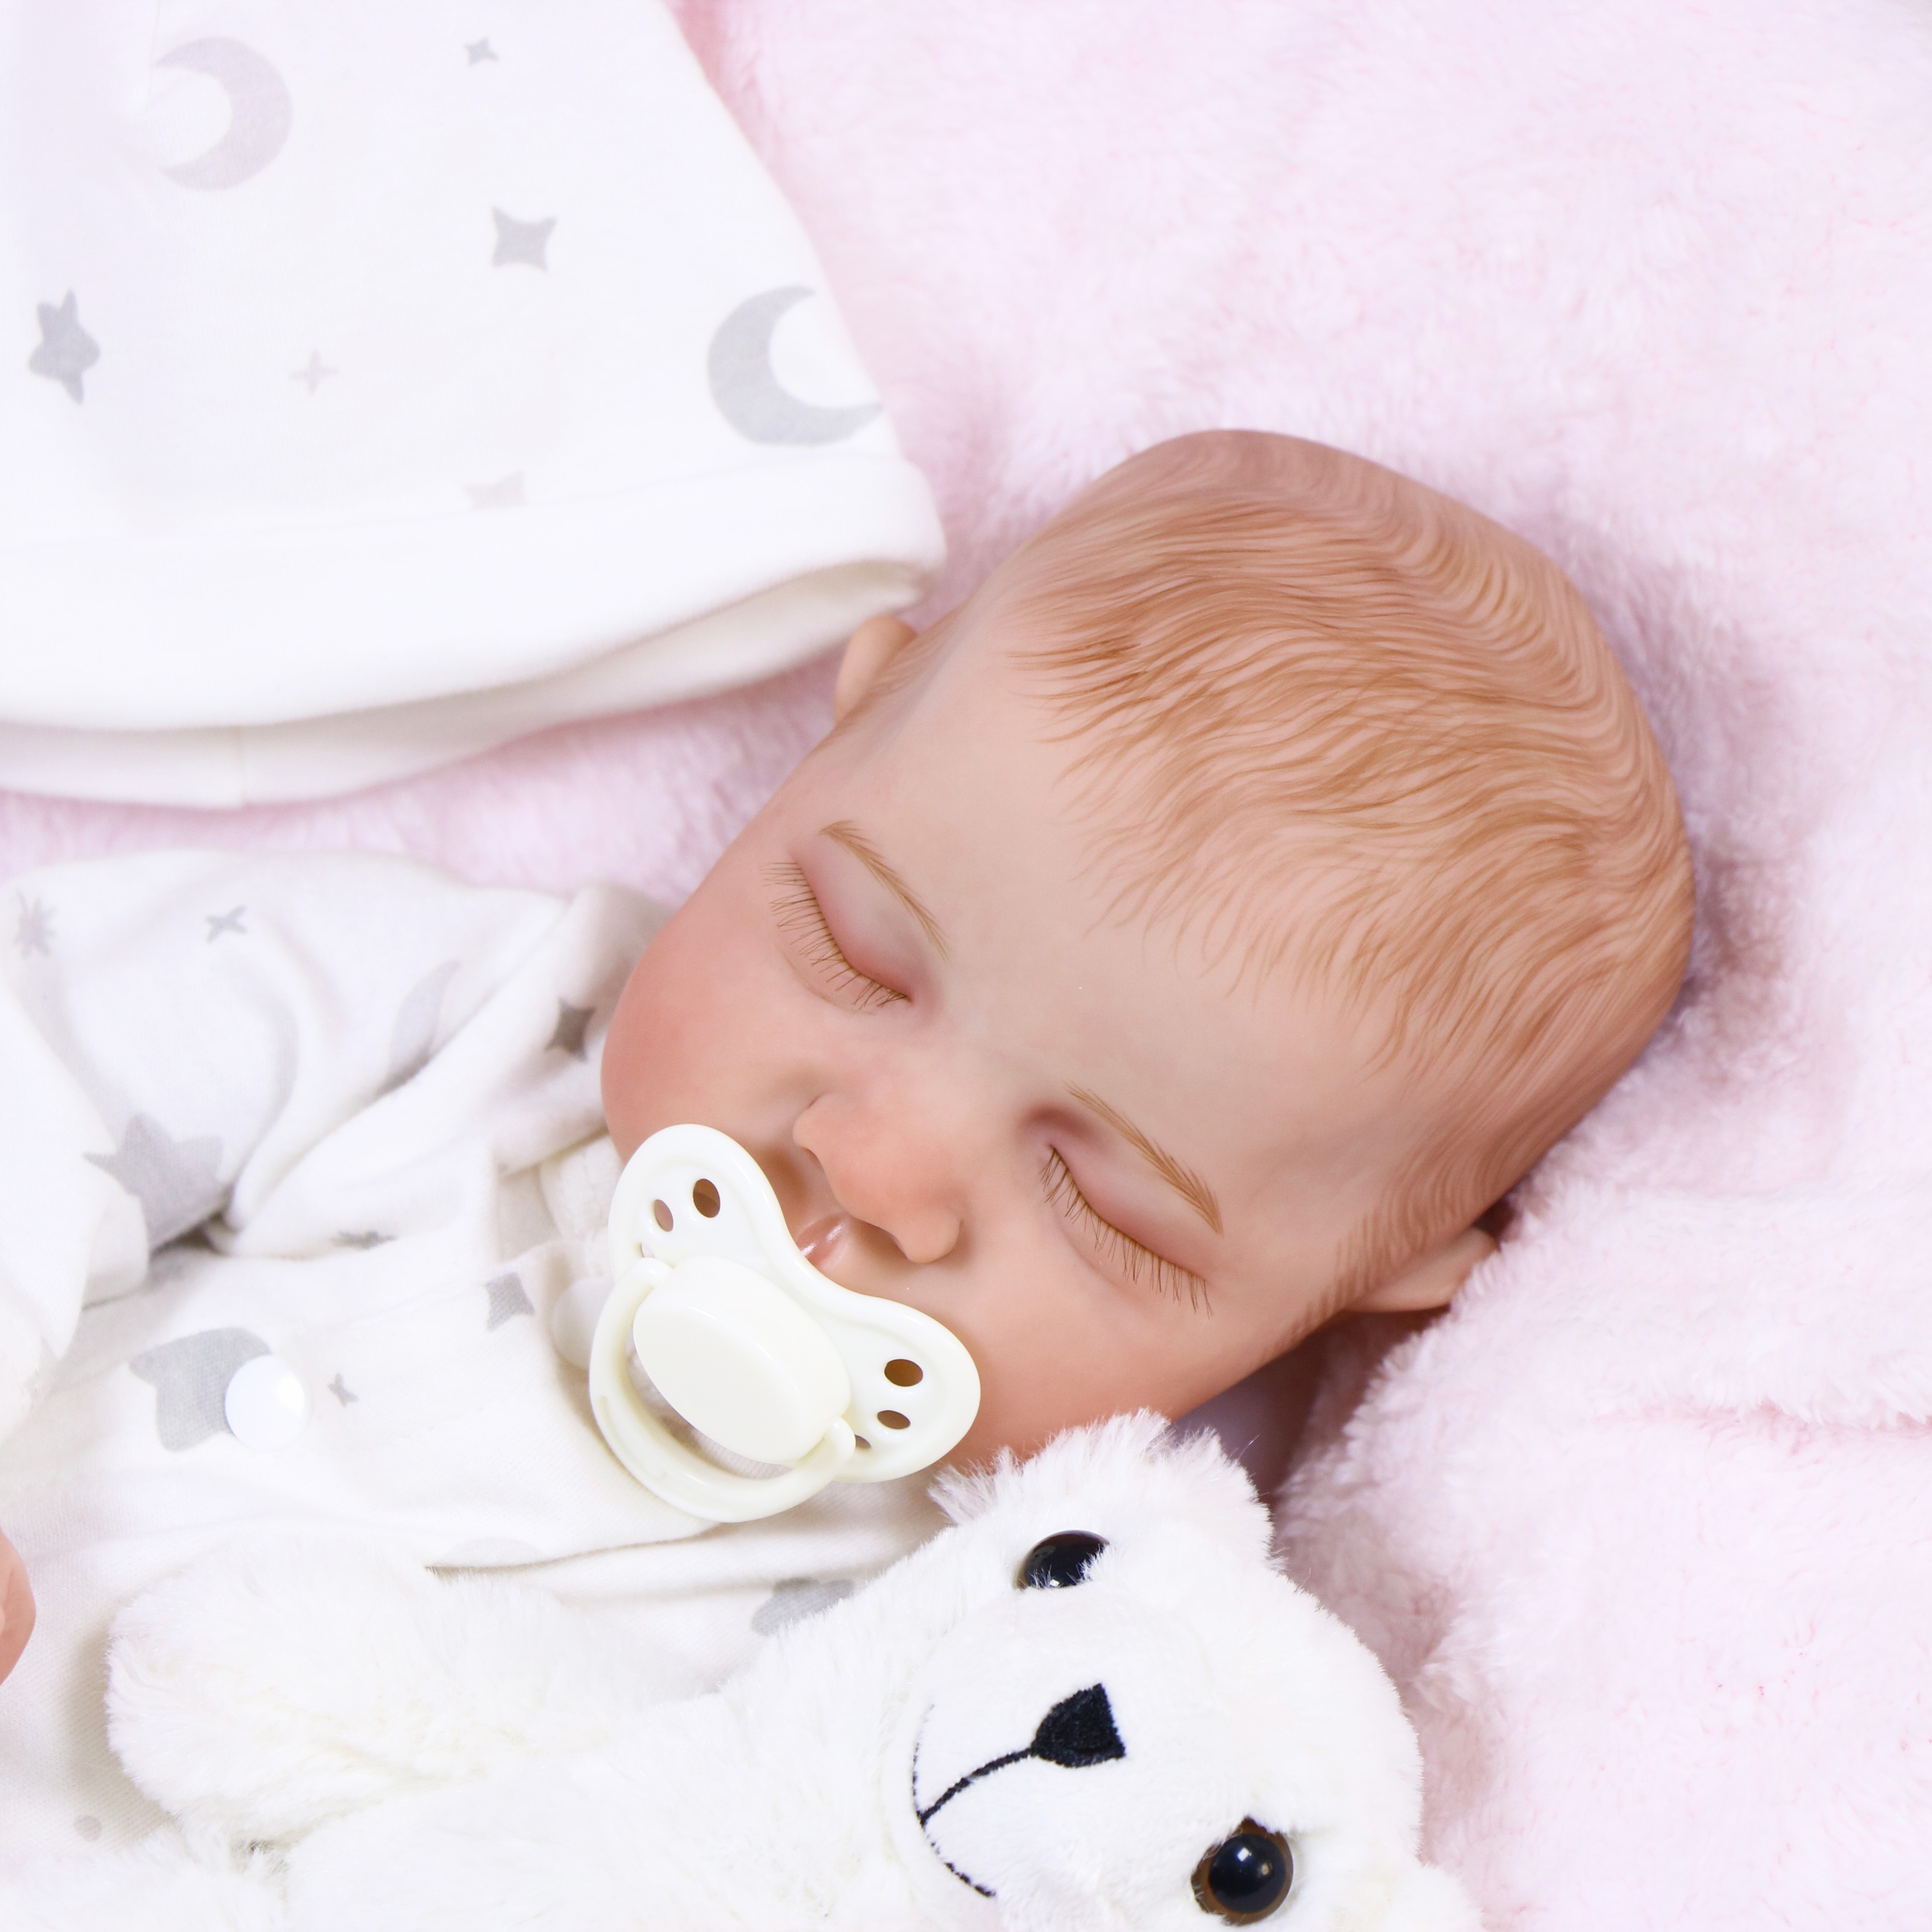 LSGOC Reborn Baby Dolls Lifelike Reborn Sleeping Baby Boy Doll 18 inch  Washable Realistic Newborn Baby Dolls